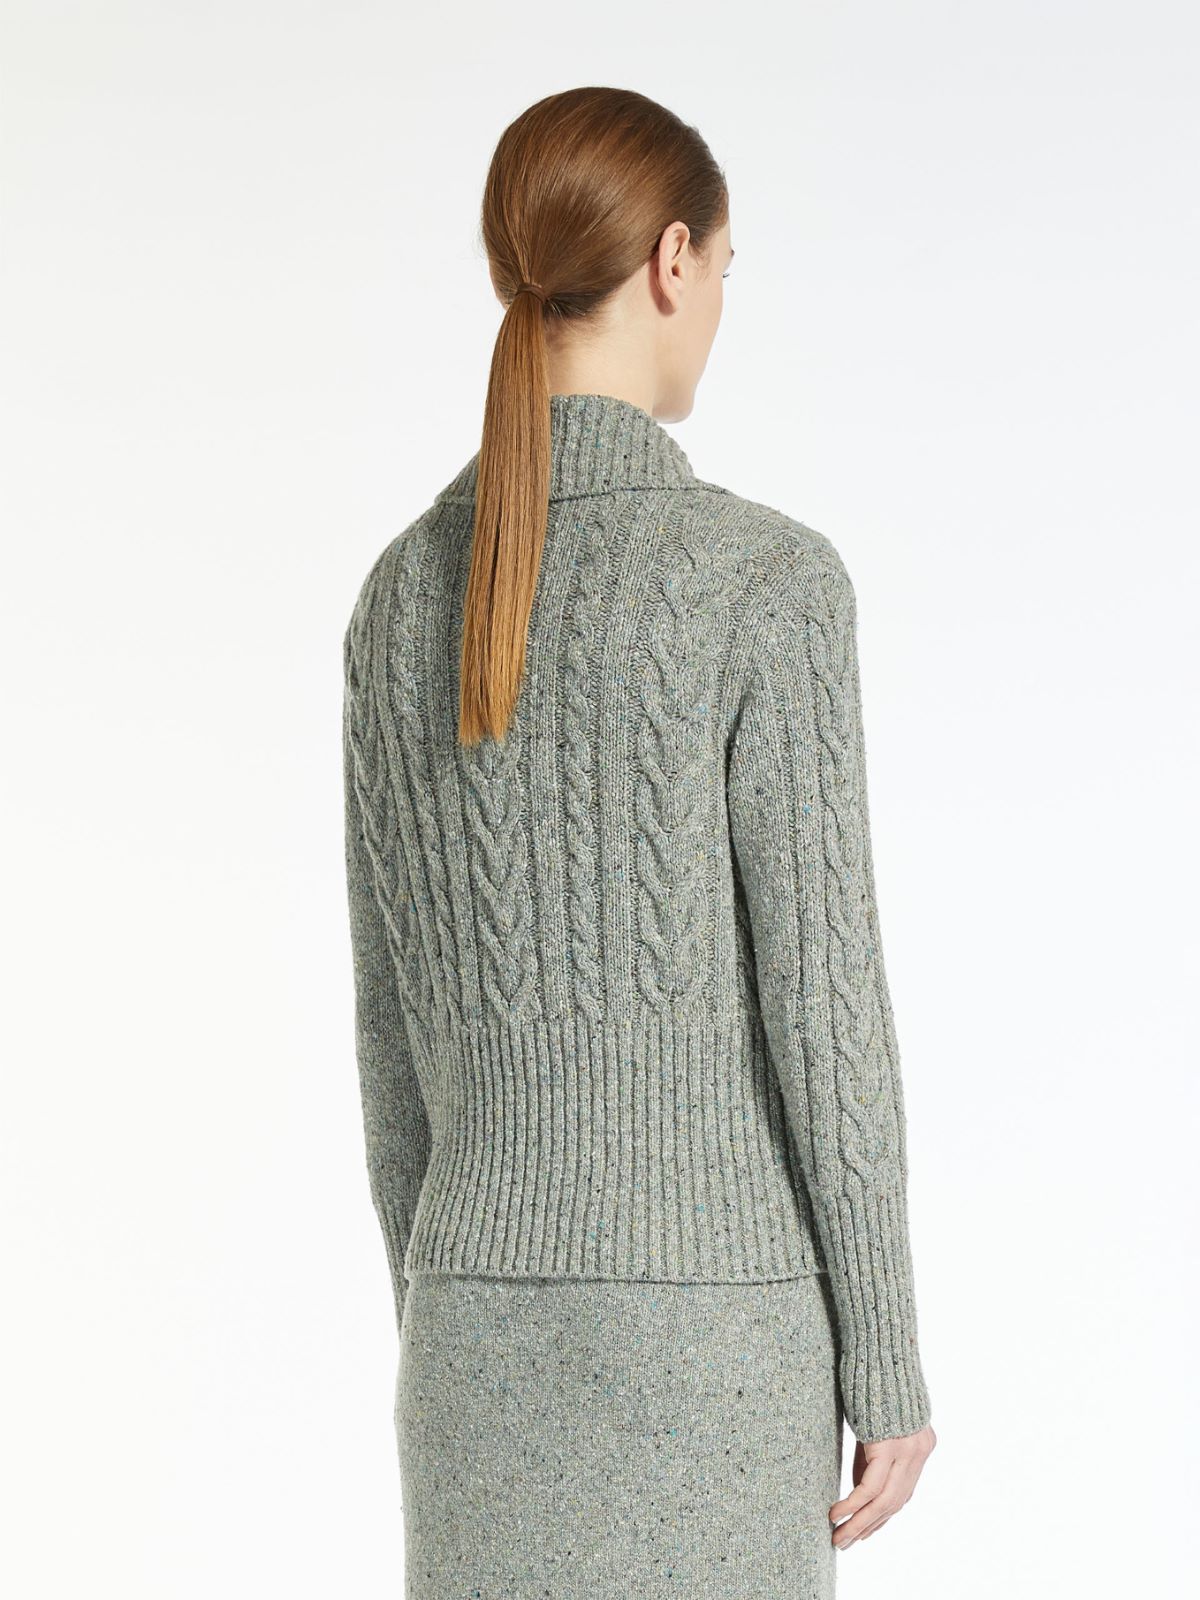 Tweed yarn sweater - MEDIUM GREY - Weekend Max Mara - 3